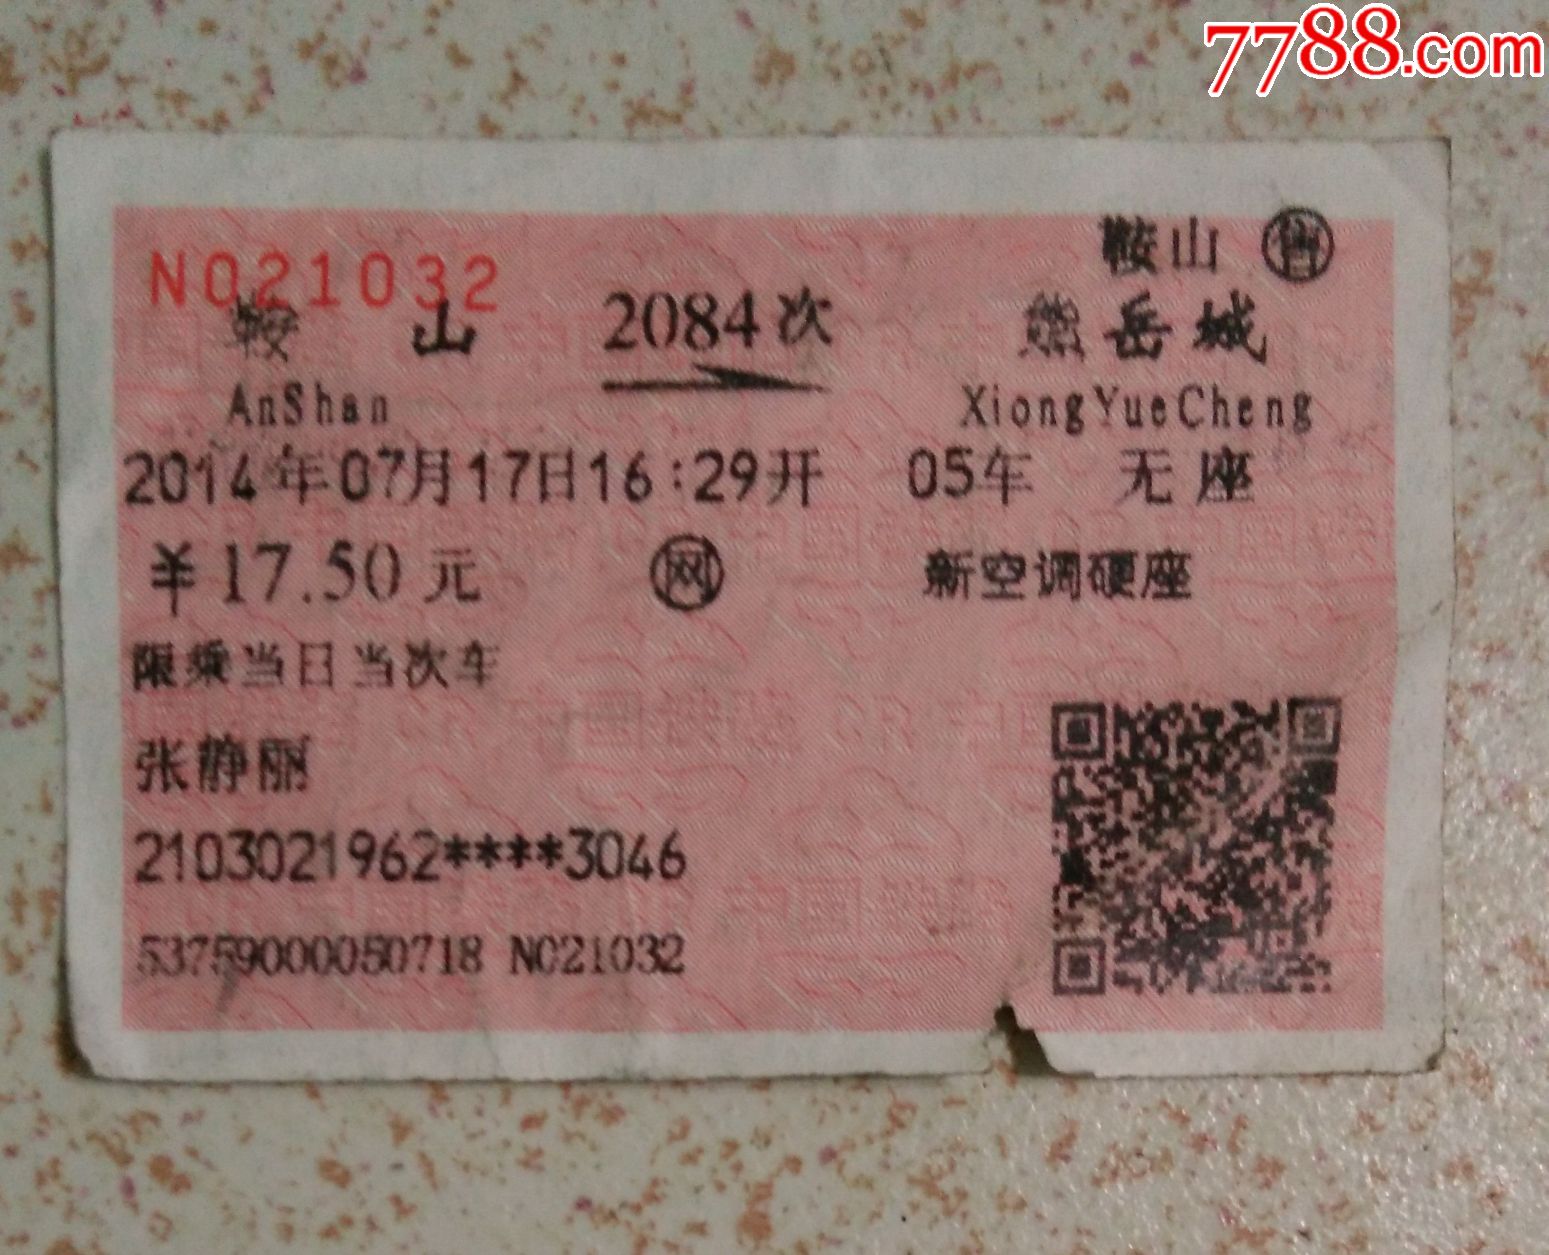 鞍山-熊岳城站火车票2084次